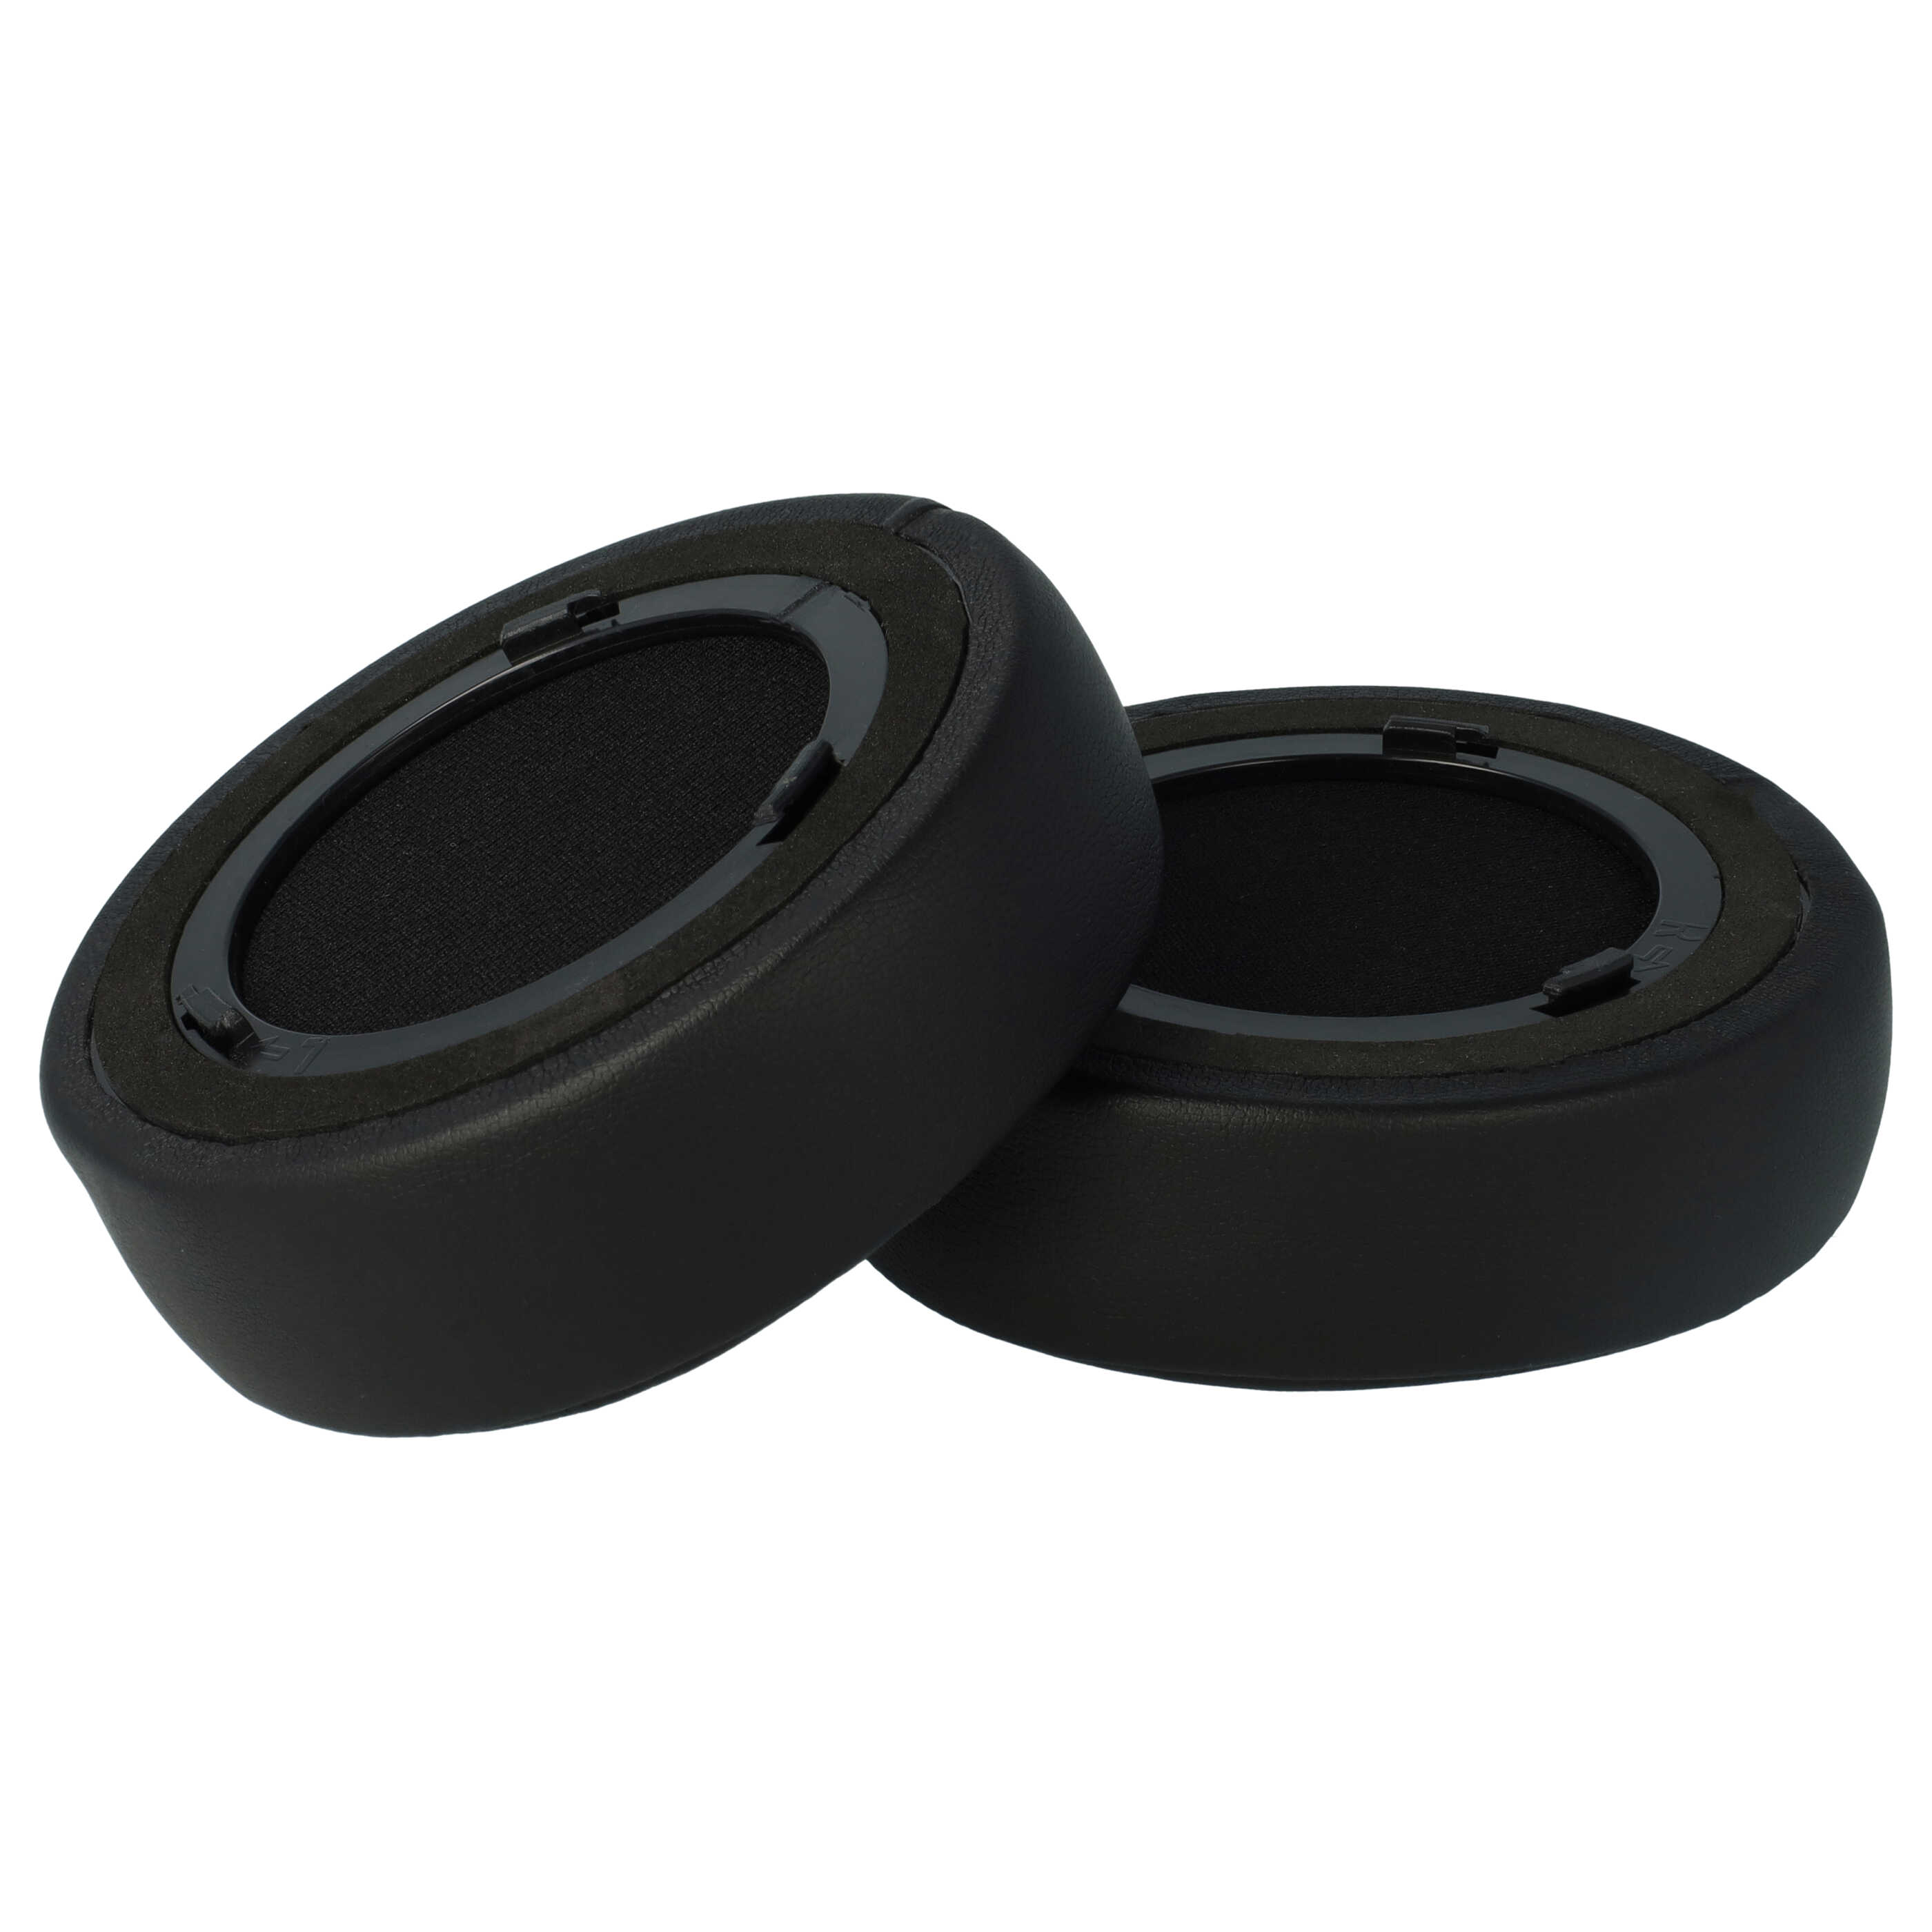 Poduszki do słuchawek Corsair Virtuoso RGB Wireless SE - pady miękkie, grub. 52 mm, czarny